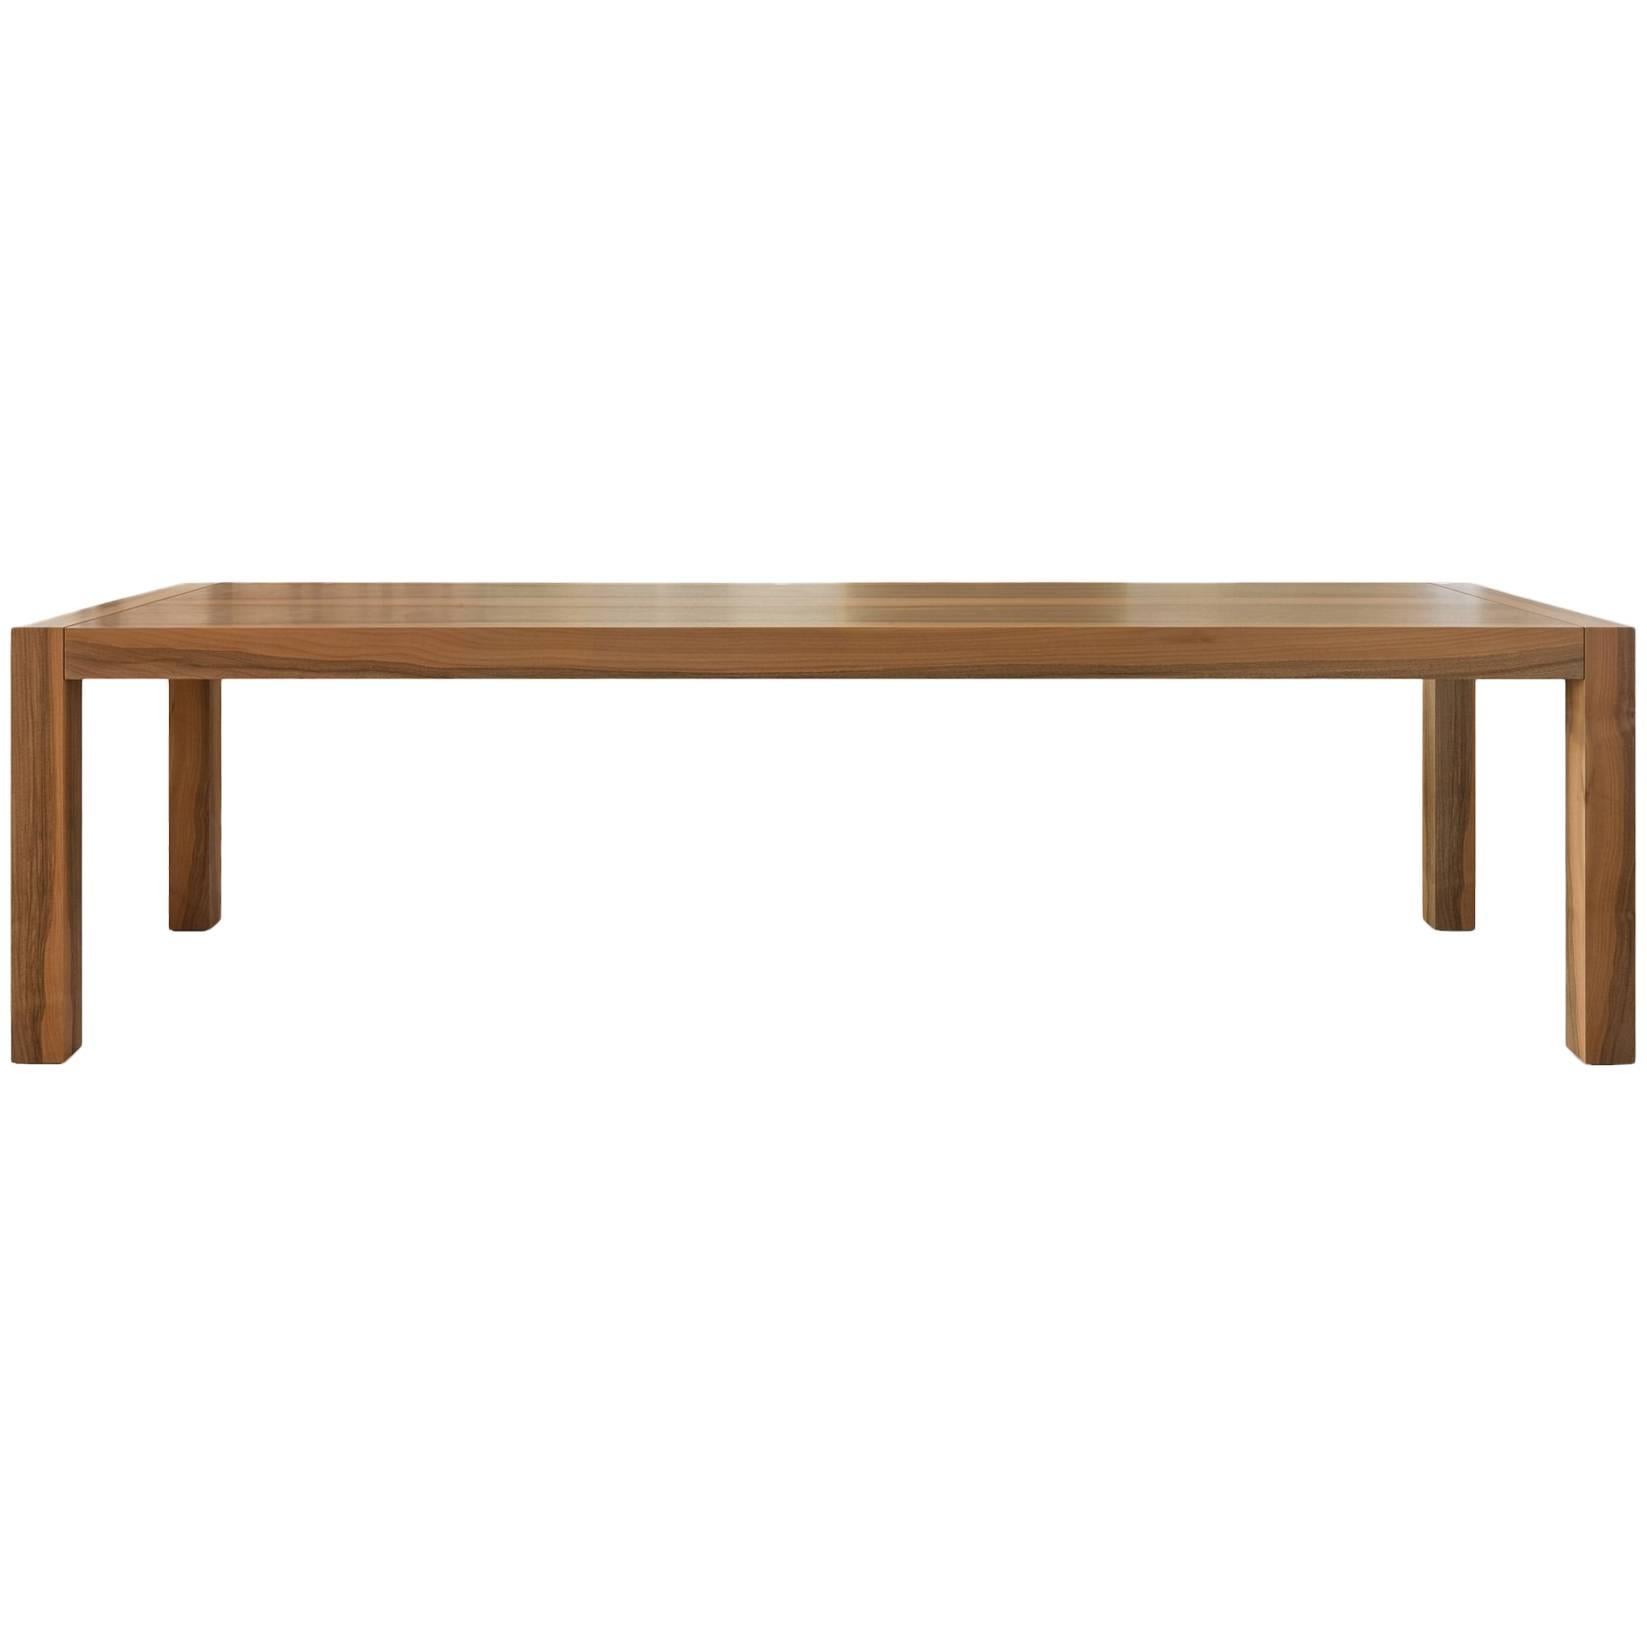 "Kwaak" Wooden Rectangular Table Designed by Stephane Lebrun for Dessie